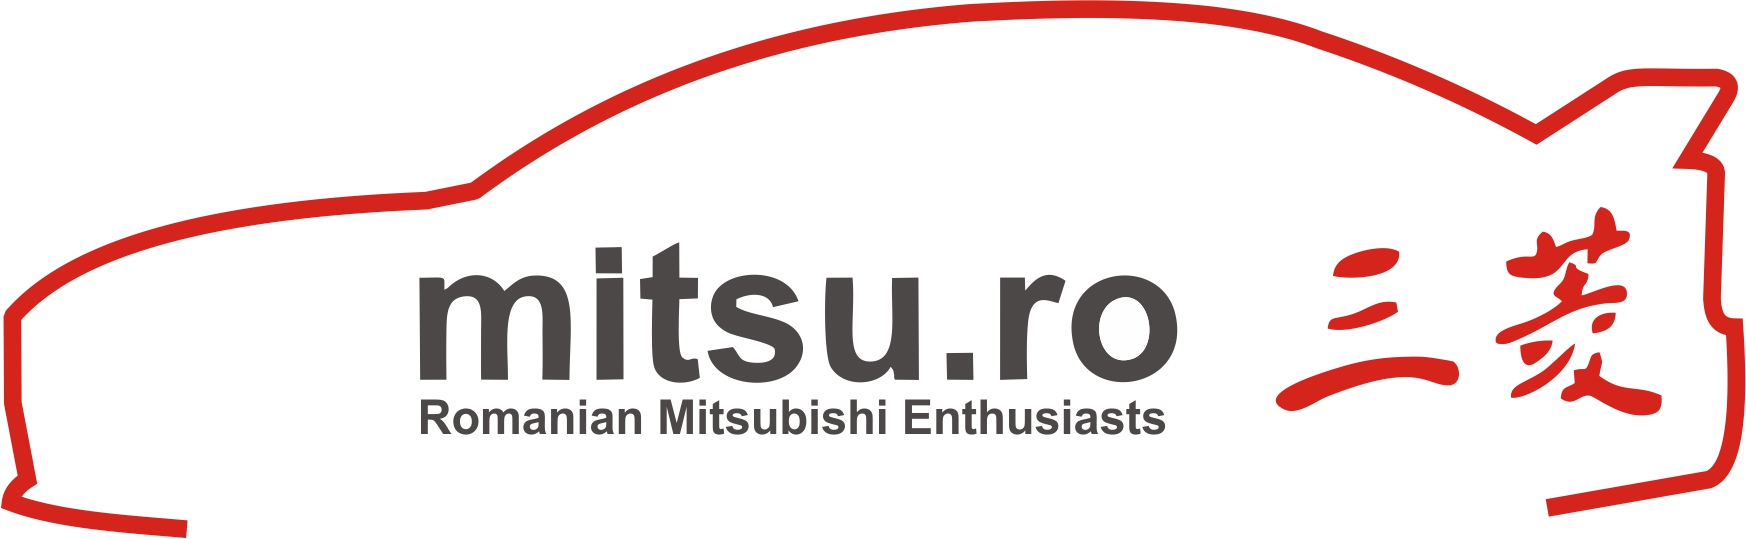 Nou_logo_Mitsu.ro.jpg